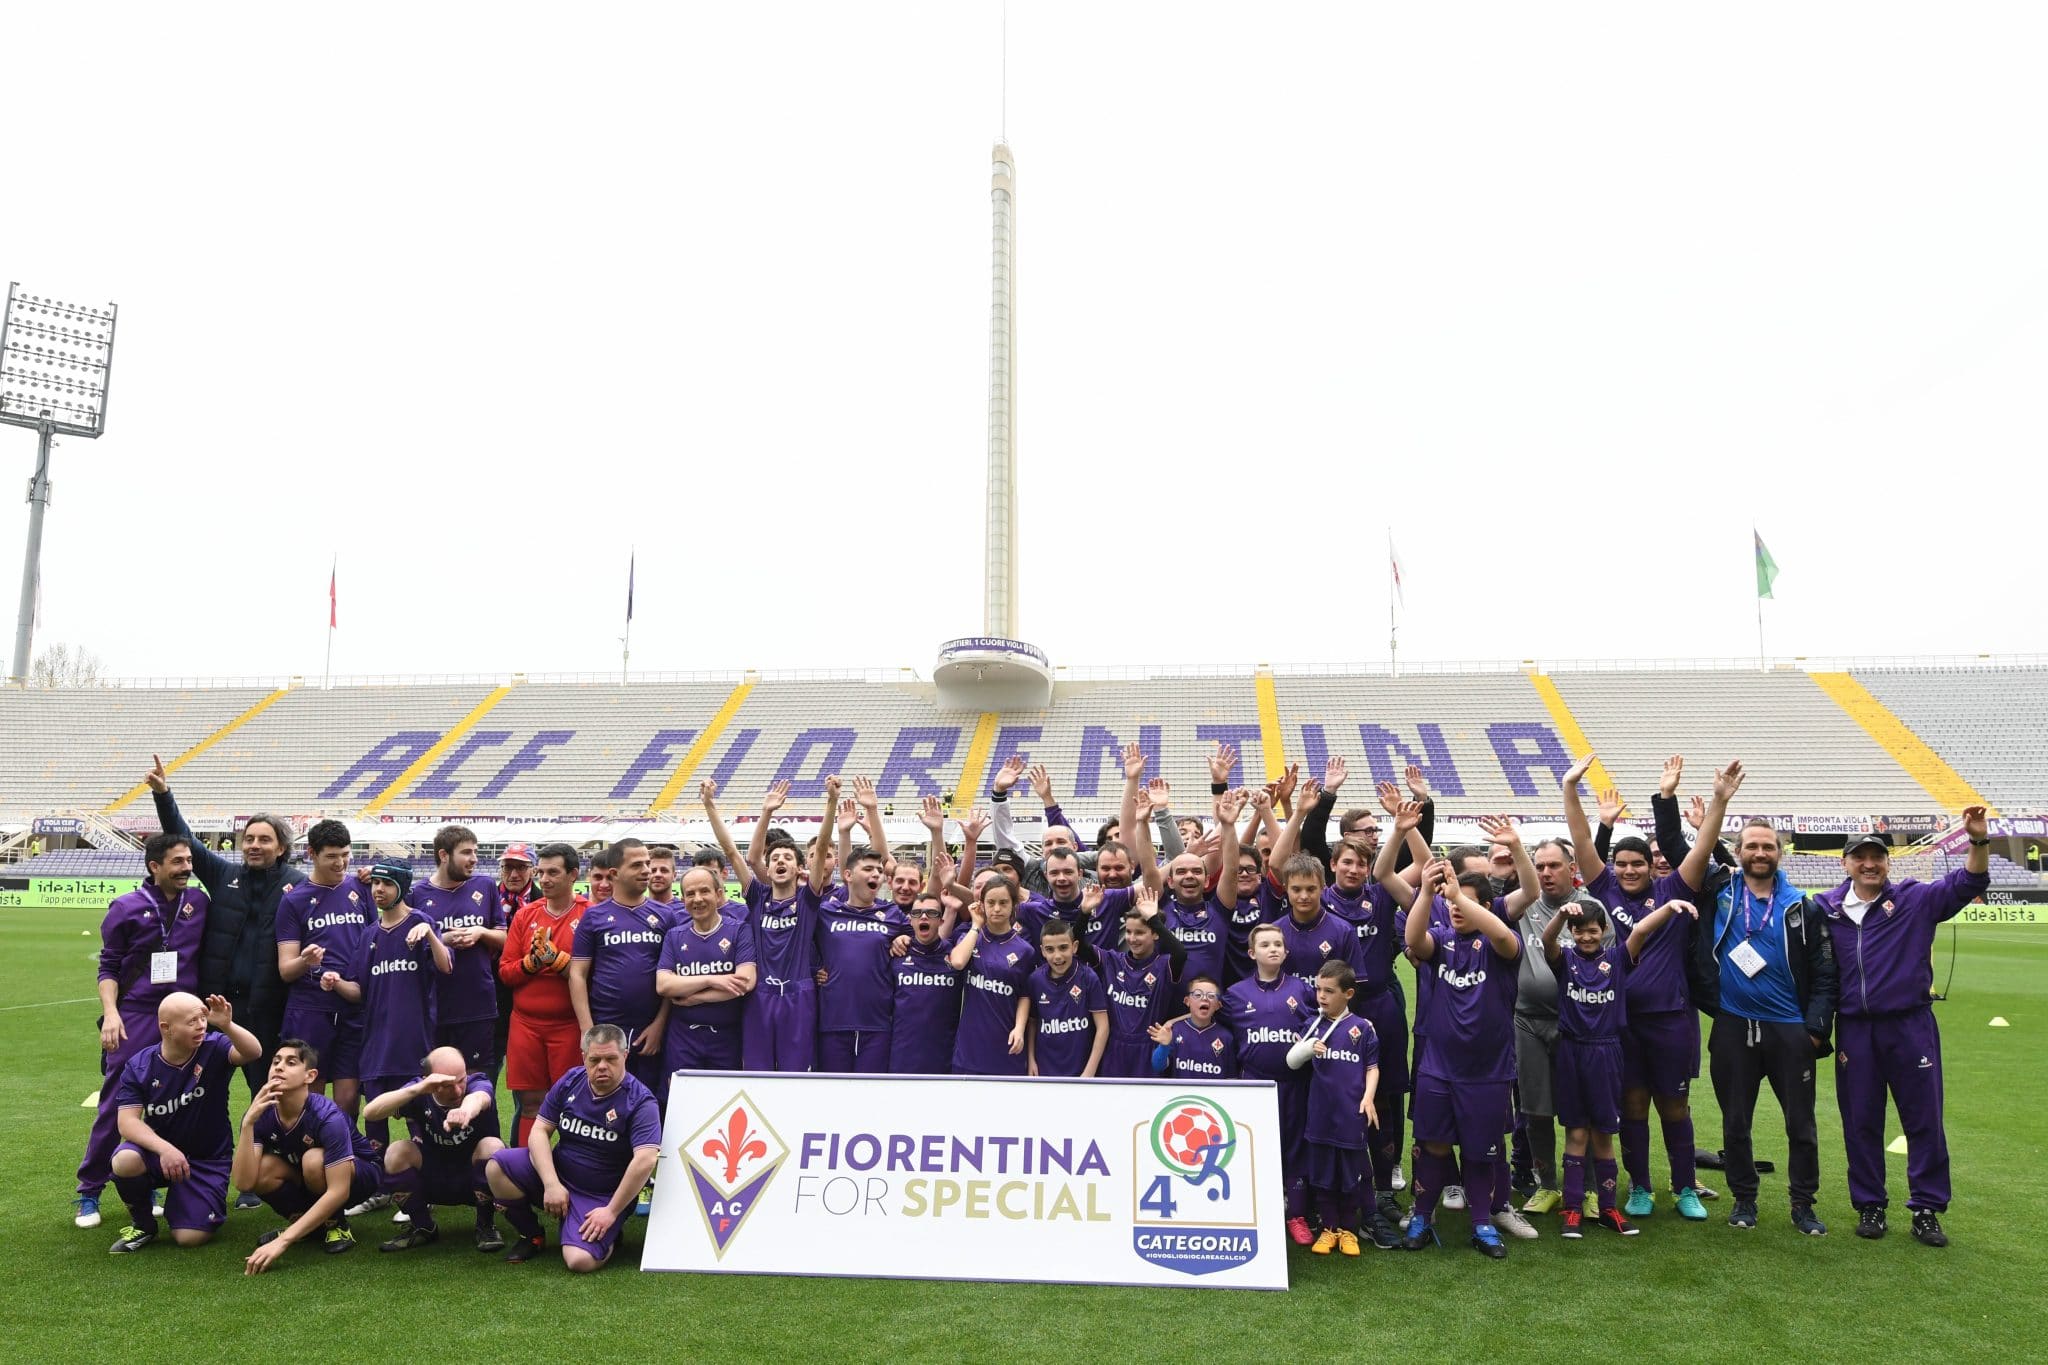 Le Fiorentina Special al Franchi Quarto Tempo e Ossona Special 15.4.18 ridotta2